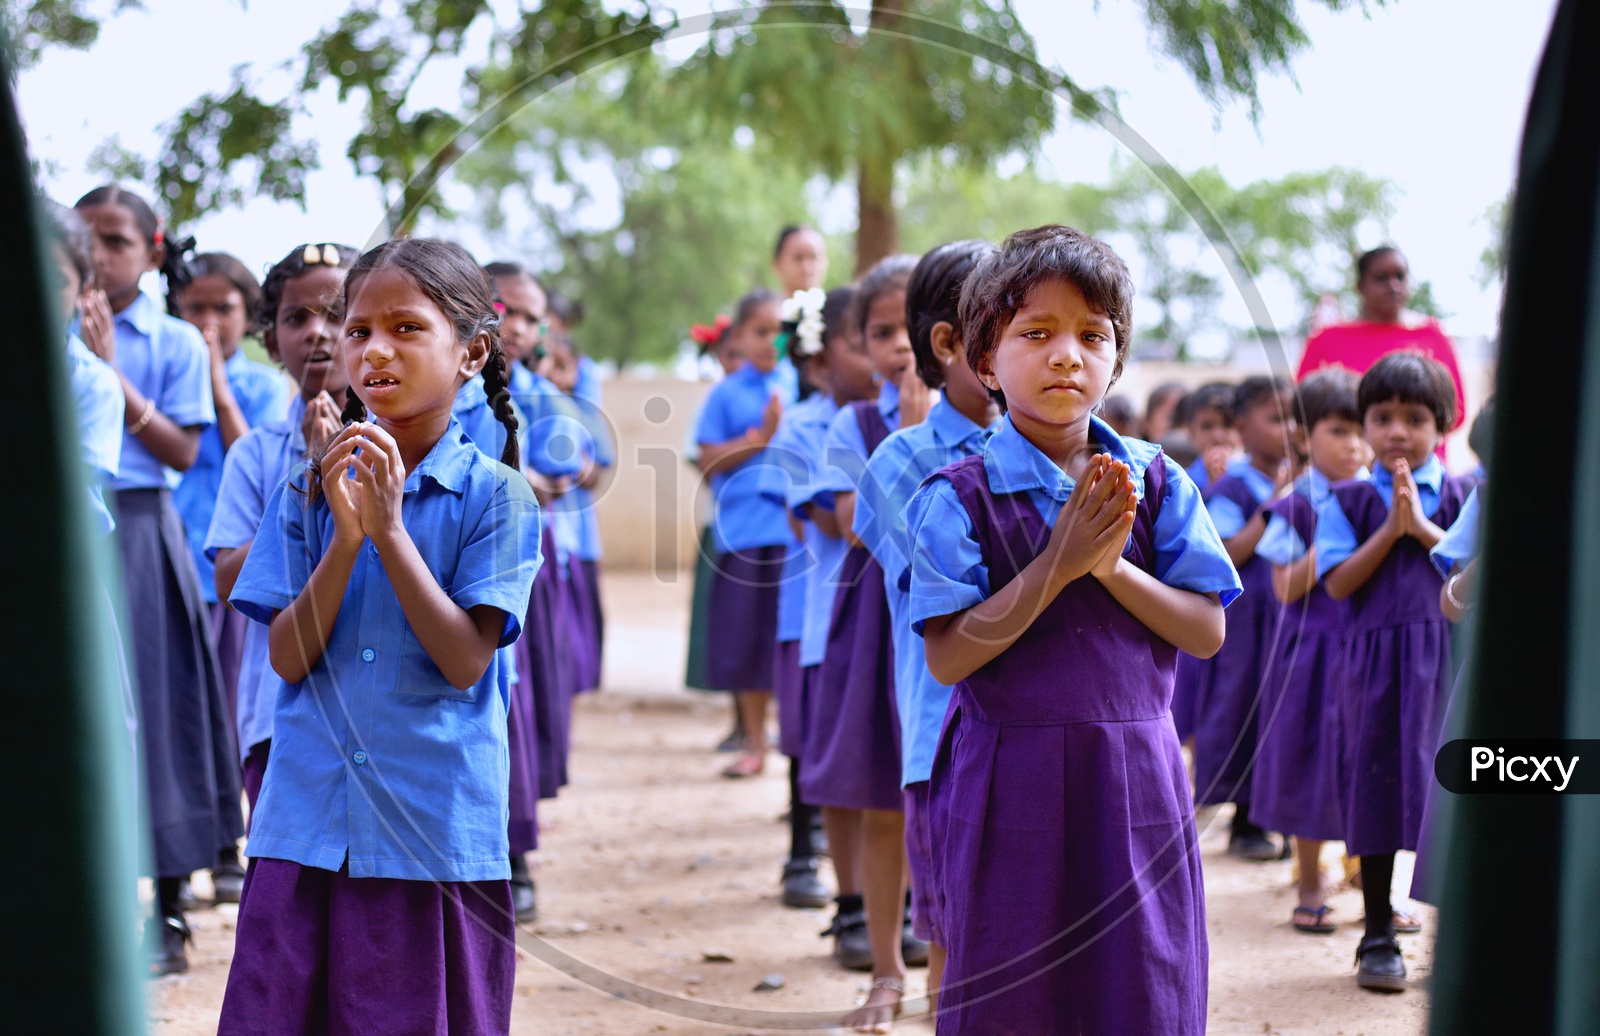 Govt school students performing morning prayer at school.